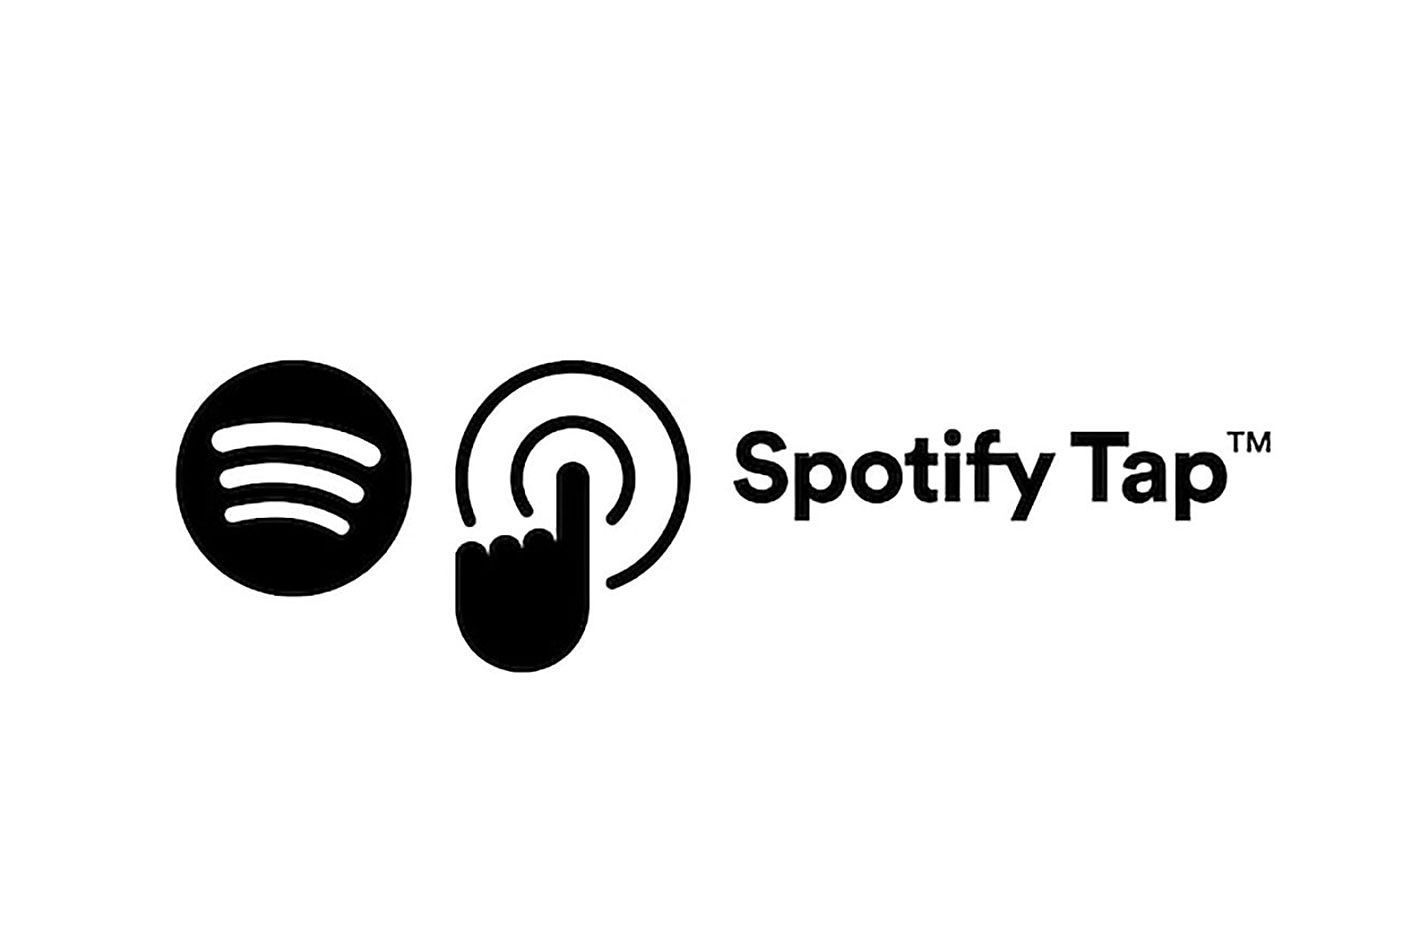 Spotify Tap 標誌圖